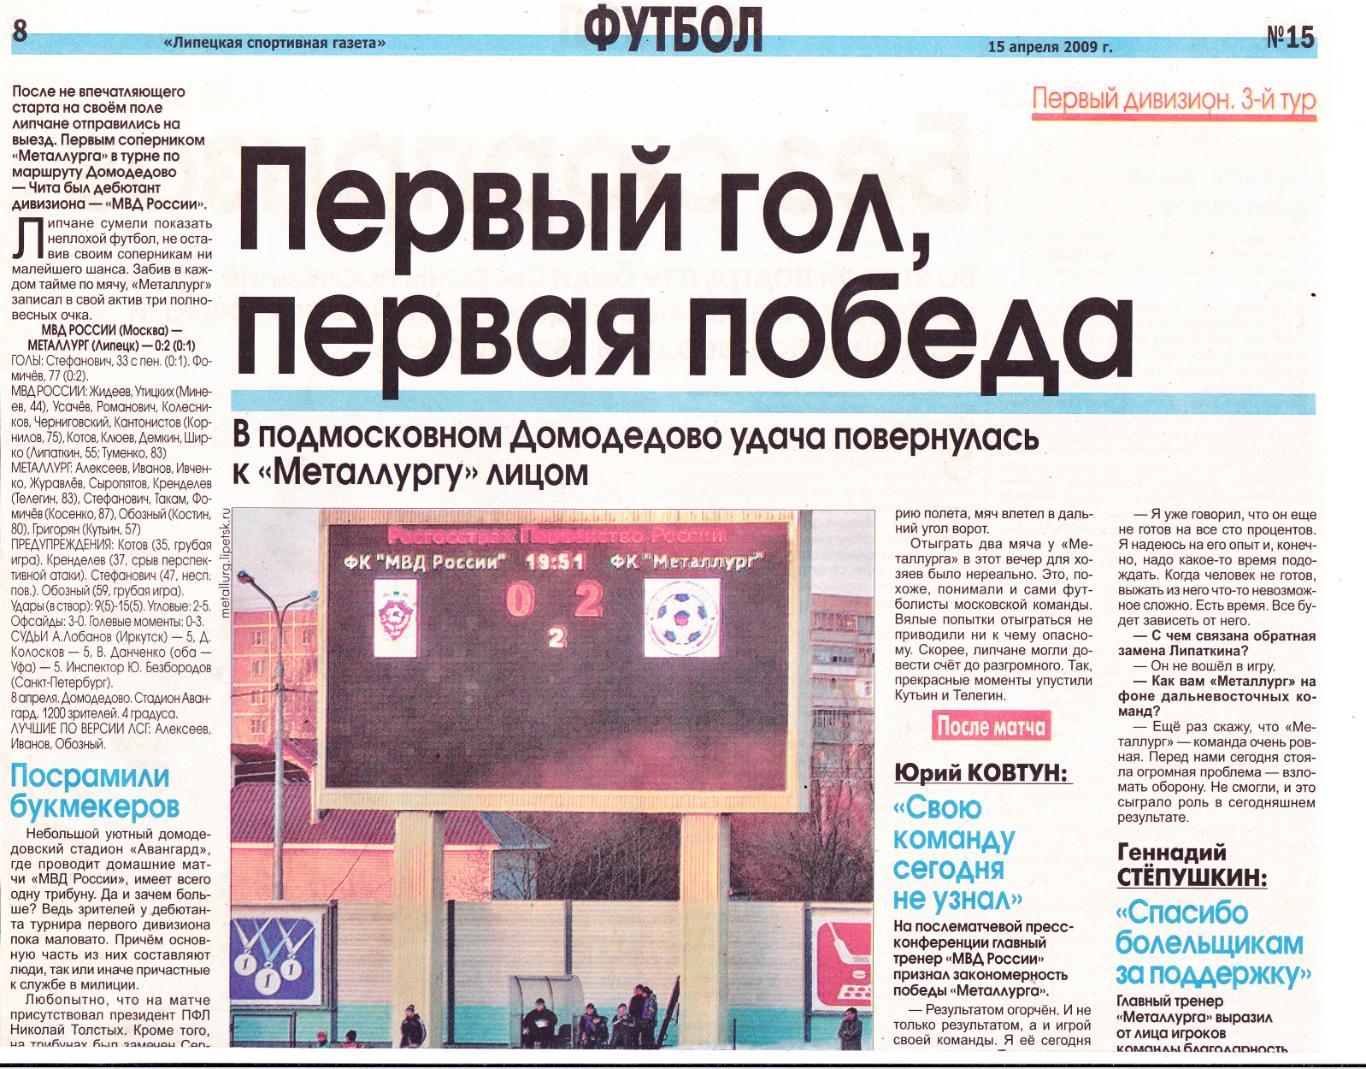 Отчет МВД России (Москва) - Металлург (Липецк) 08.04.2009